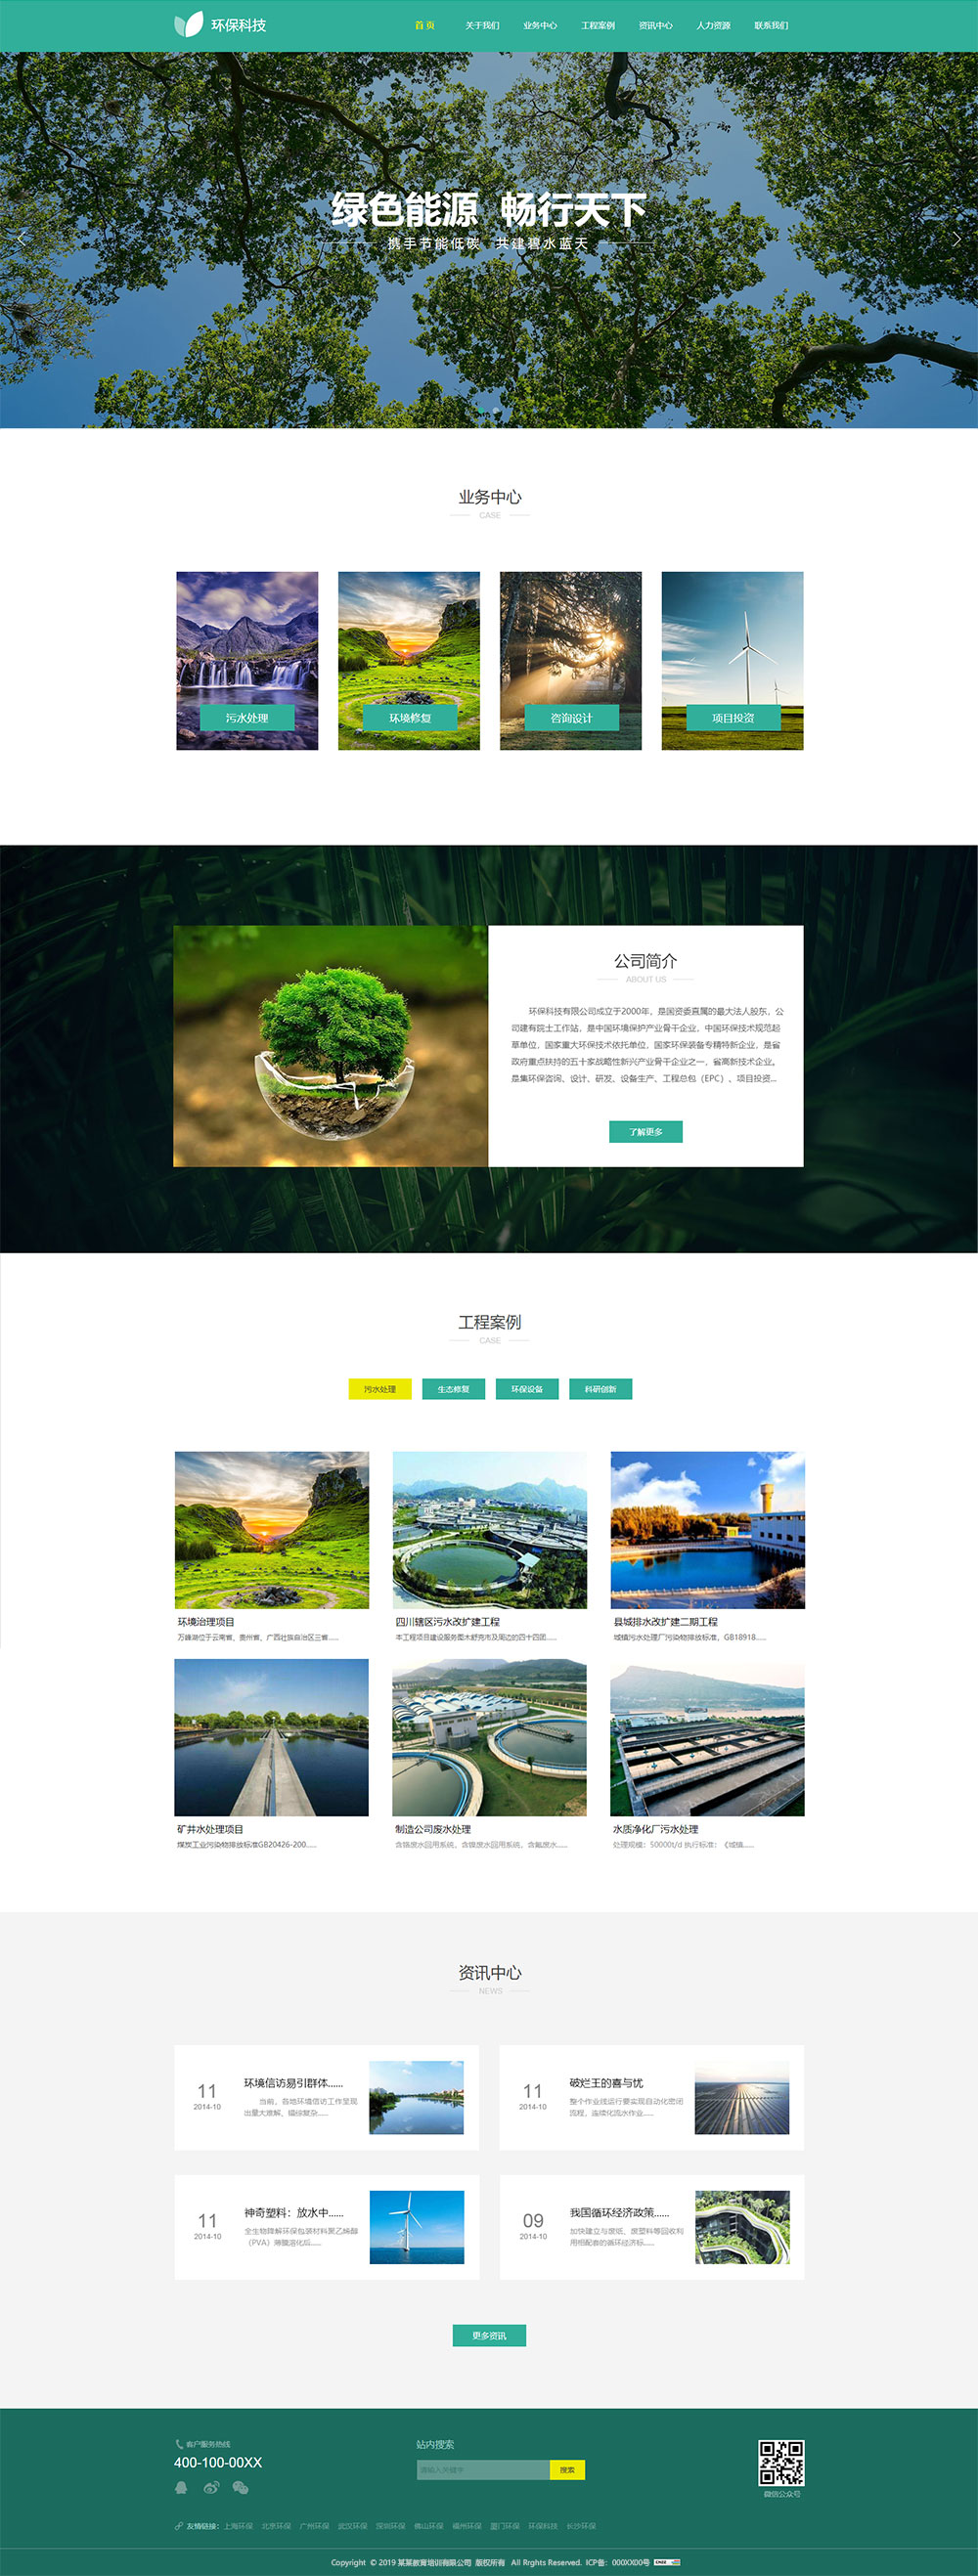 企业网站精美模板-environment-228